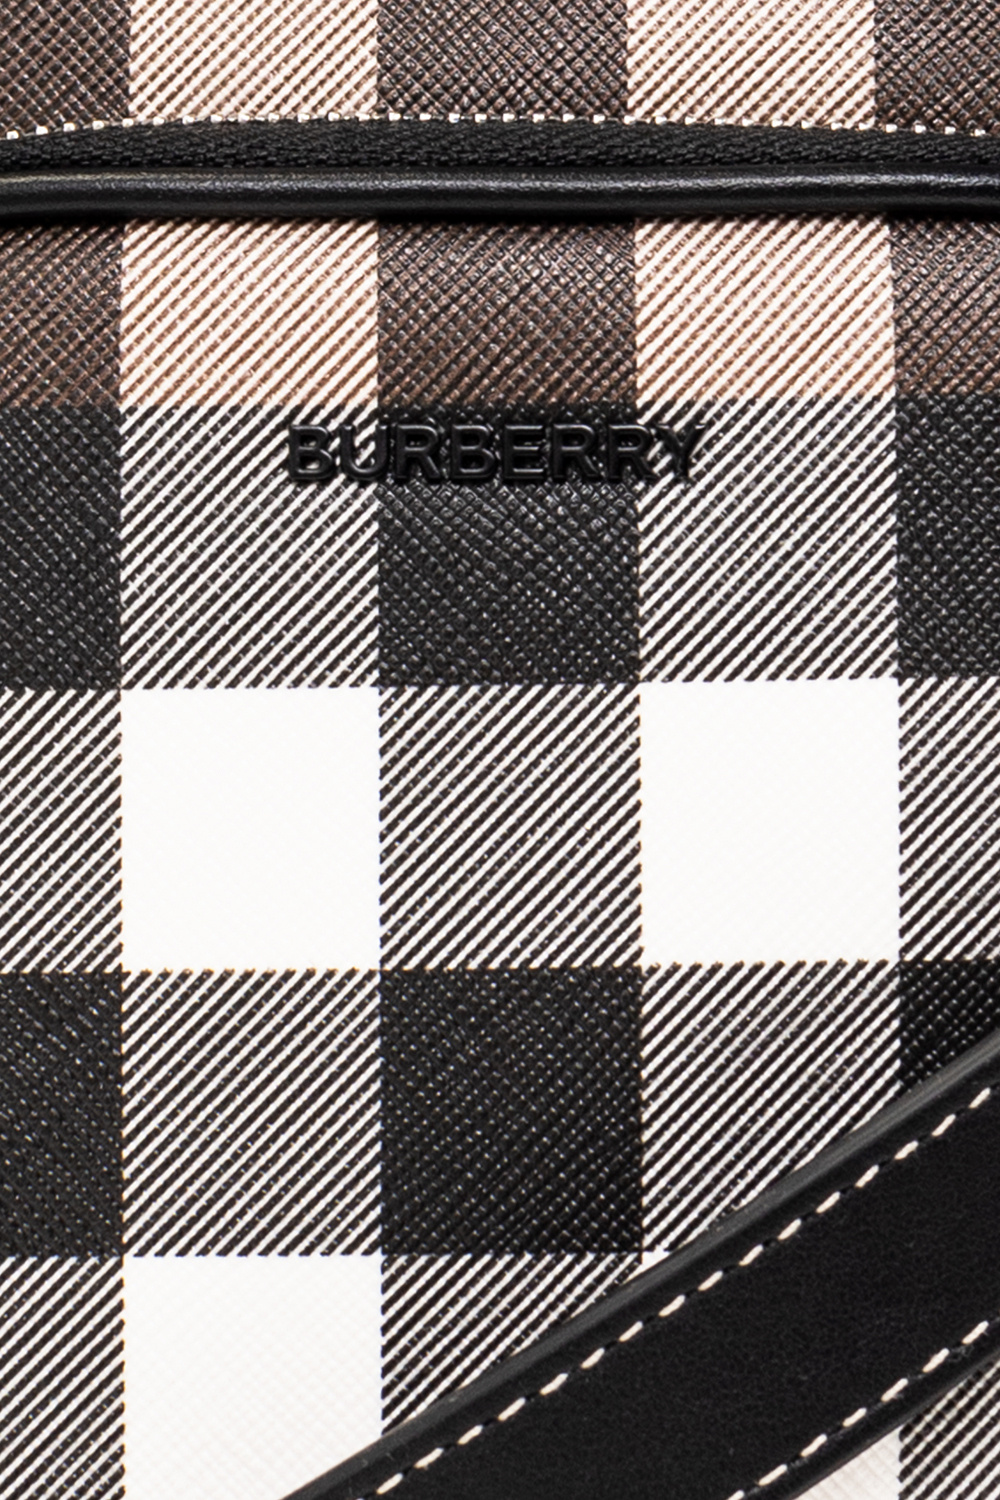 Burberry burberry tb monogram cashmere scarf item